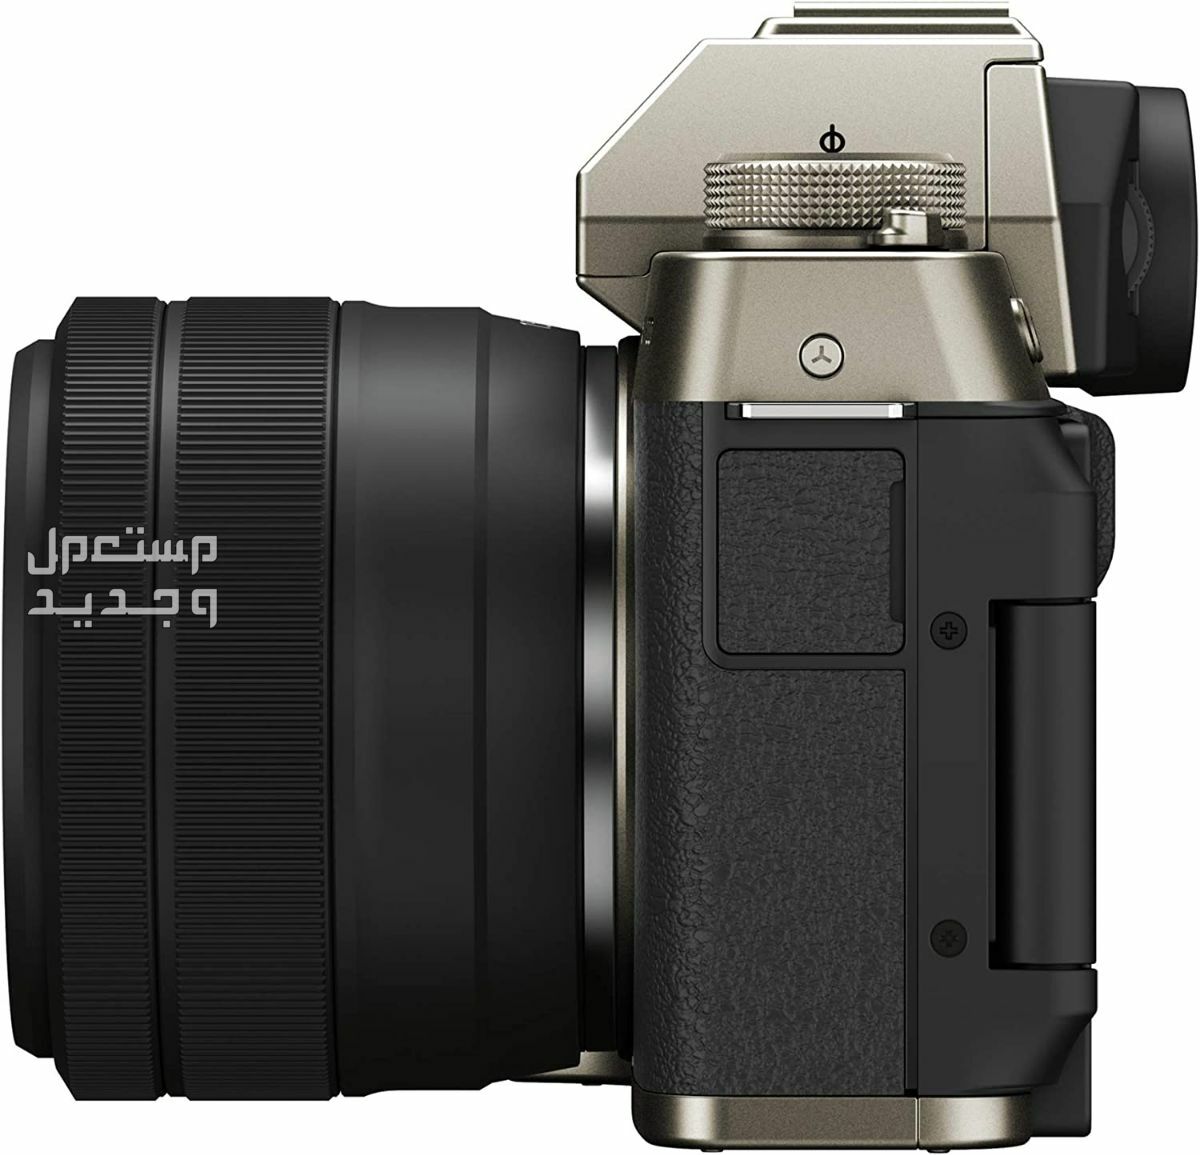 10 كاميرات تصوير ماركات عالمية بأسعار رخيصة في الكويت سعر كاميرا Fujifilm X-T200